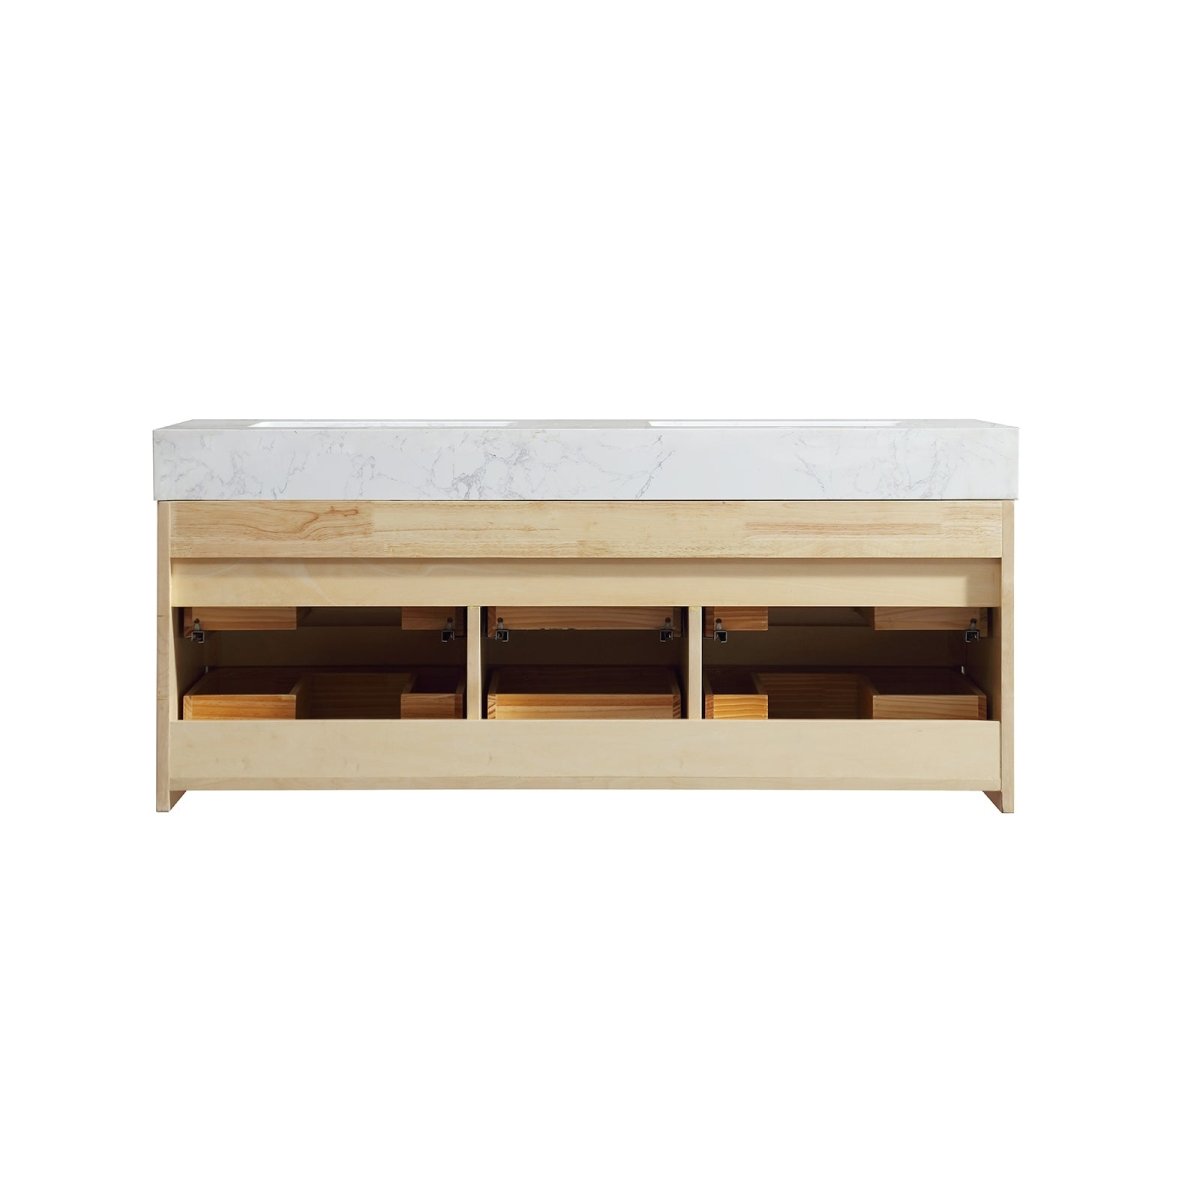 Maple Wood 48" Modern Luxury Bathroom Vanity with Stone Double Countertop